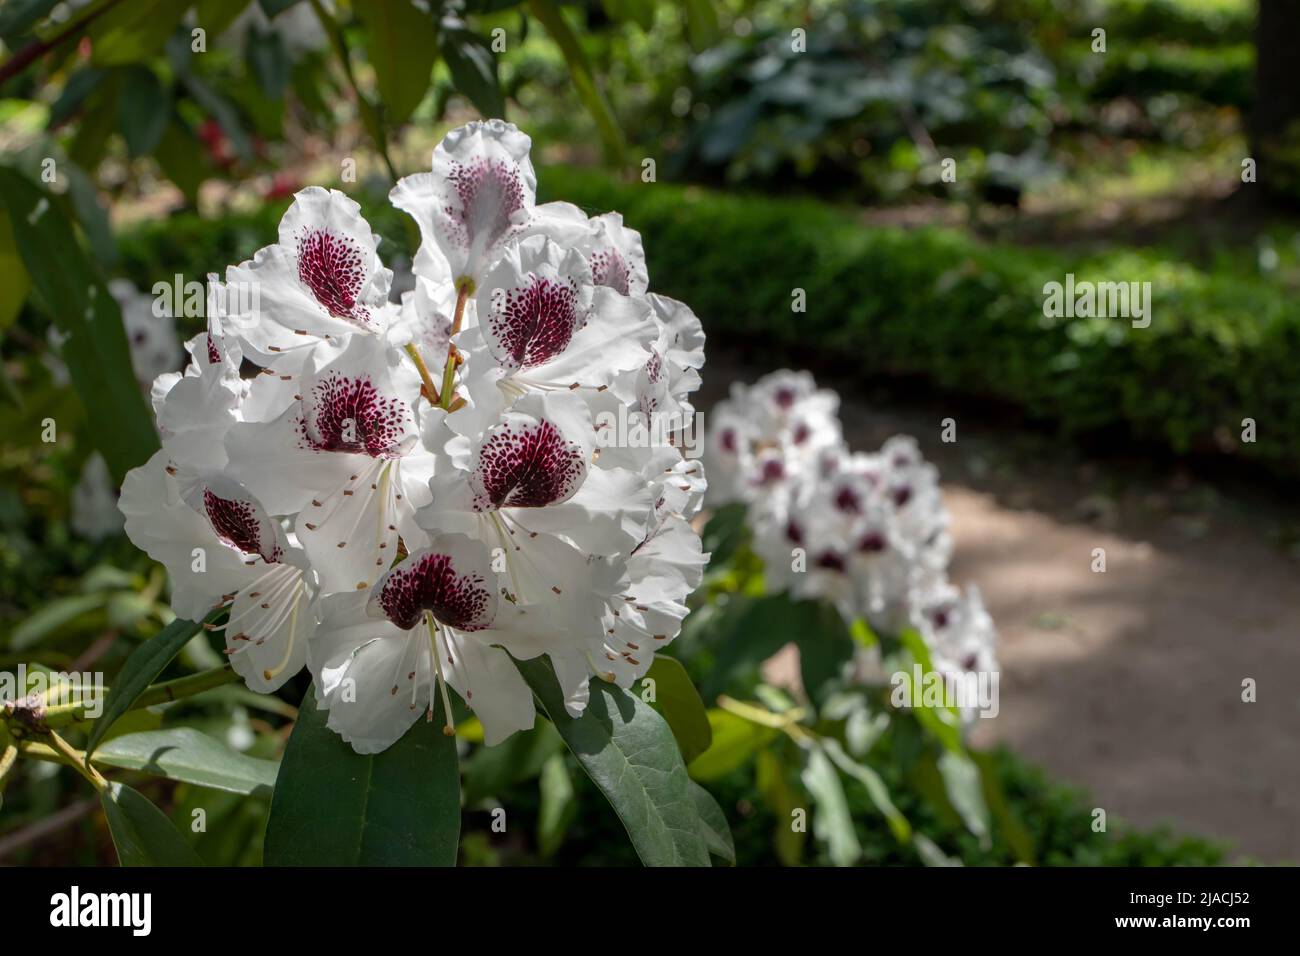 Planta rododendrina con flores blancas cubiertas de manchas púrpura oscuro en el jardín ornamental Foto de stock